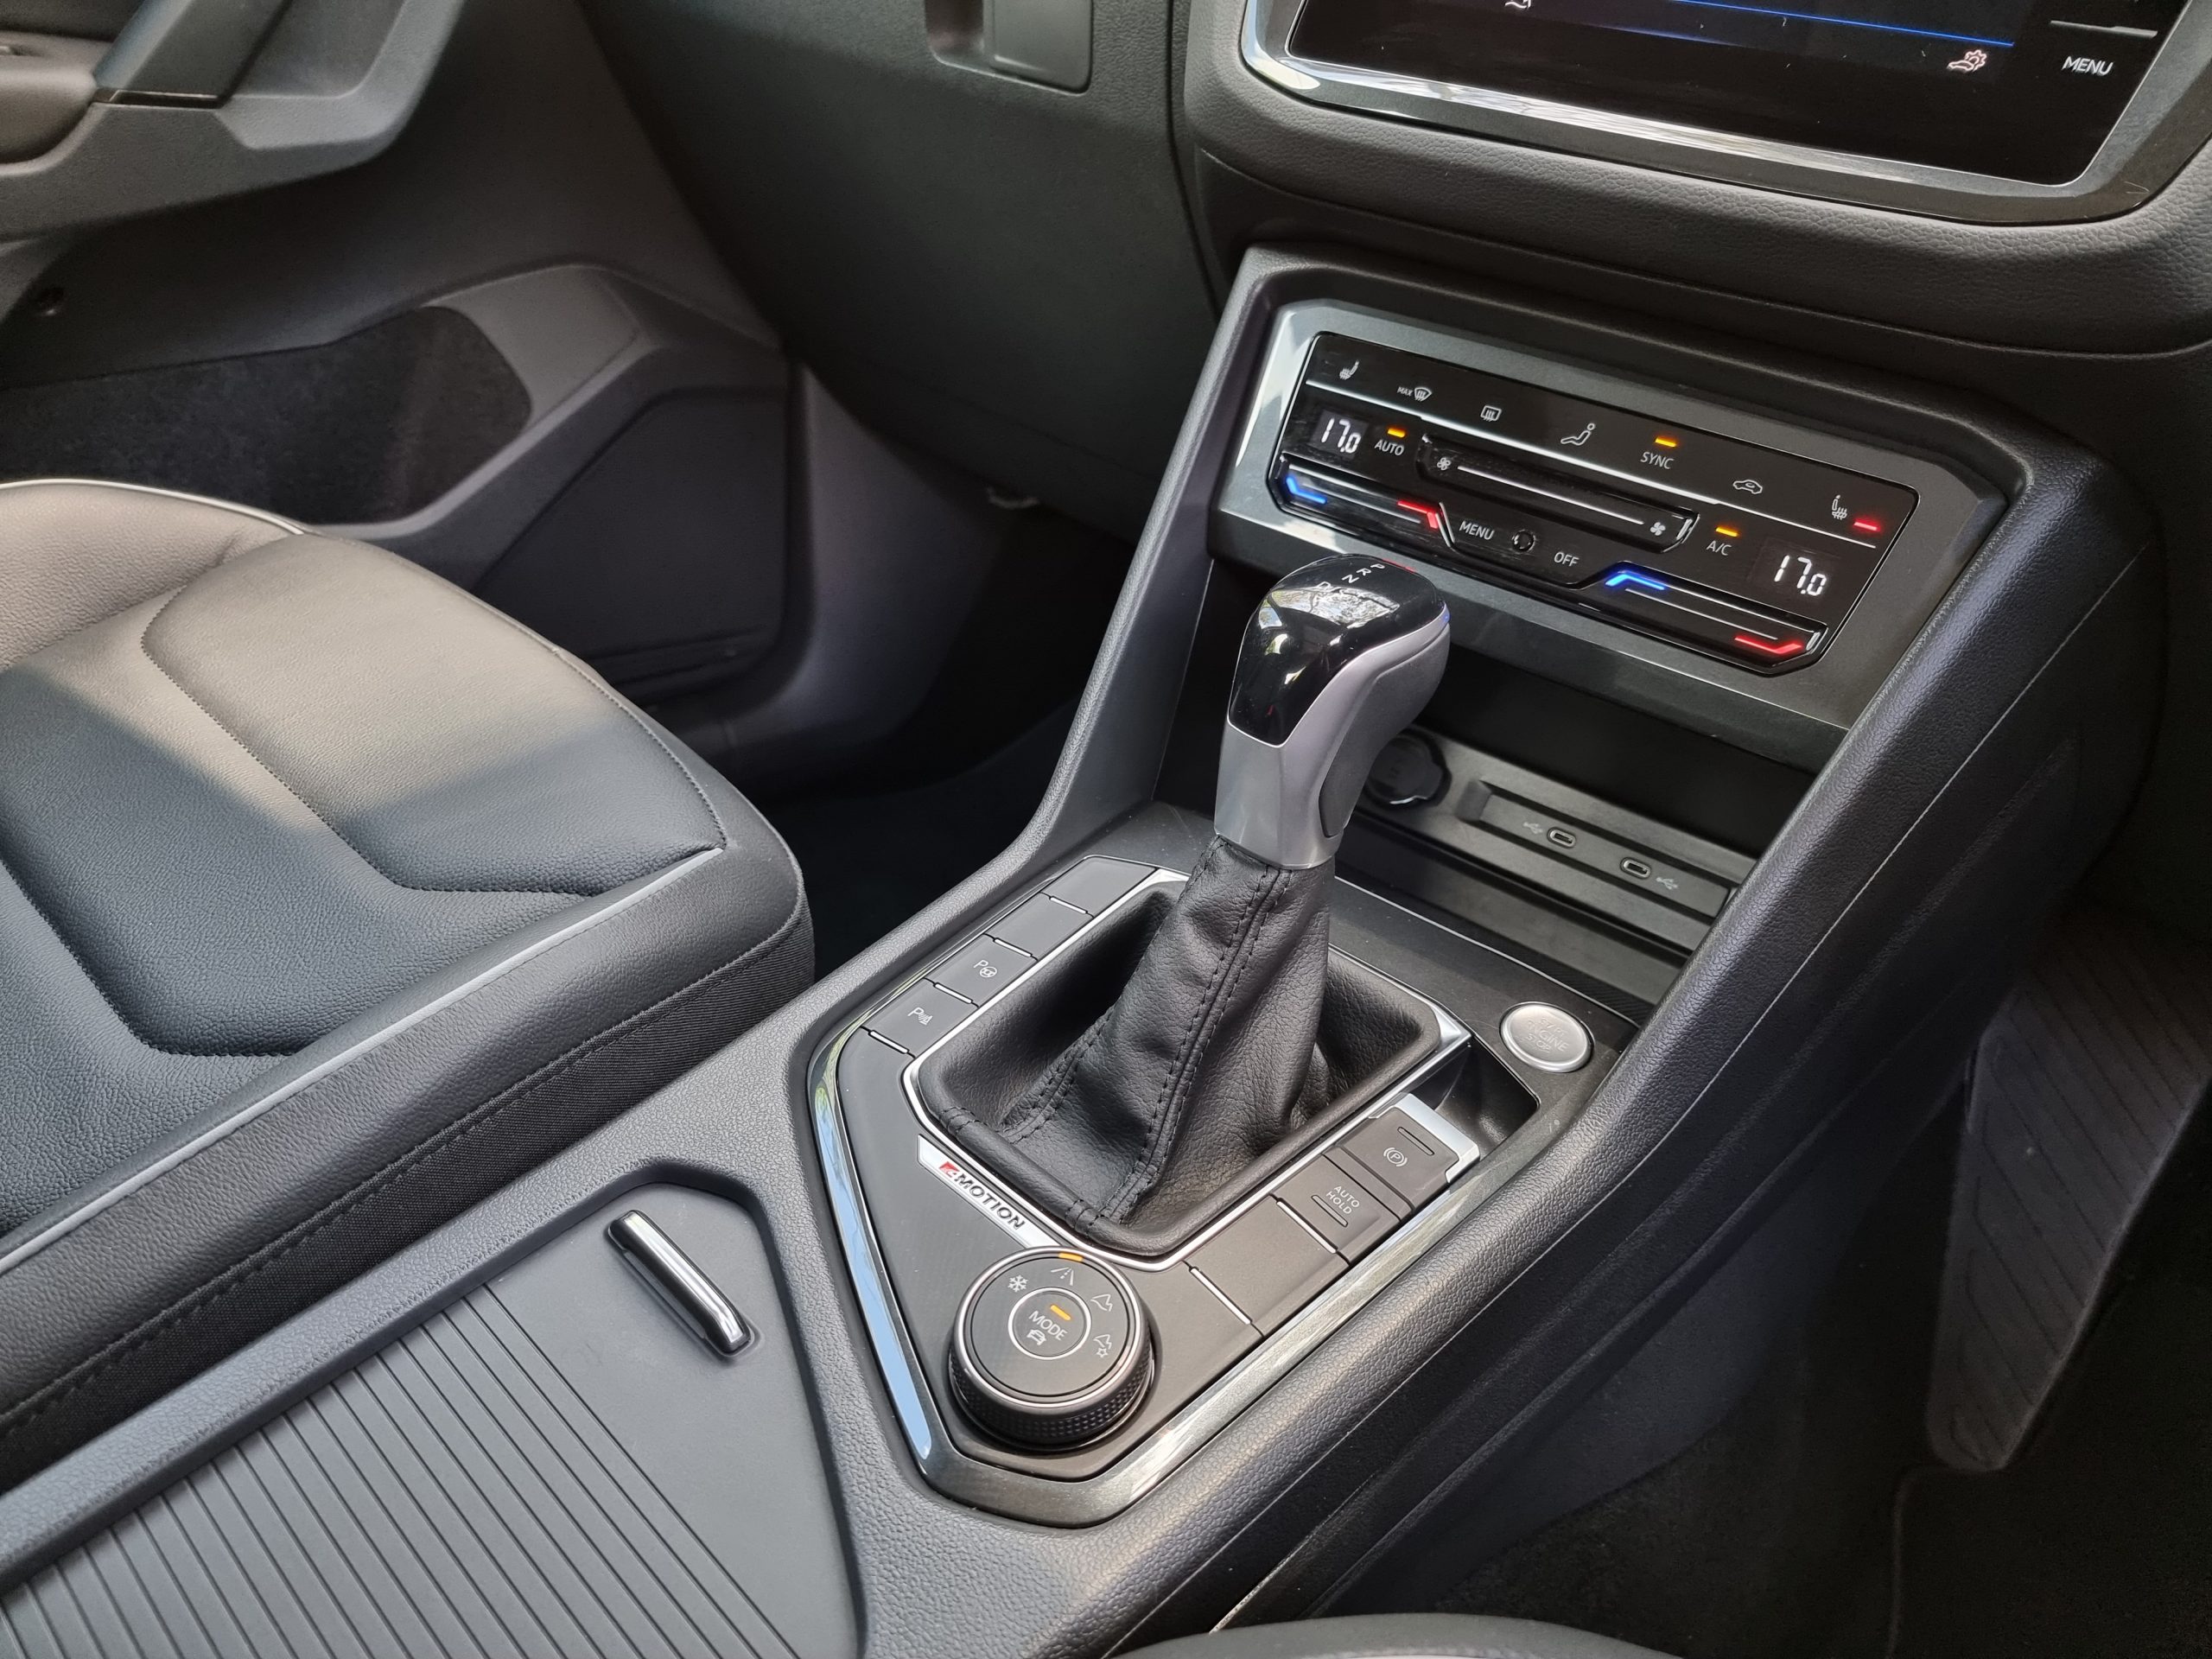 2022 Volkswagen Tiguan interior